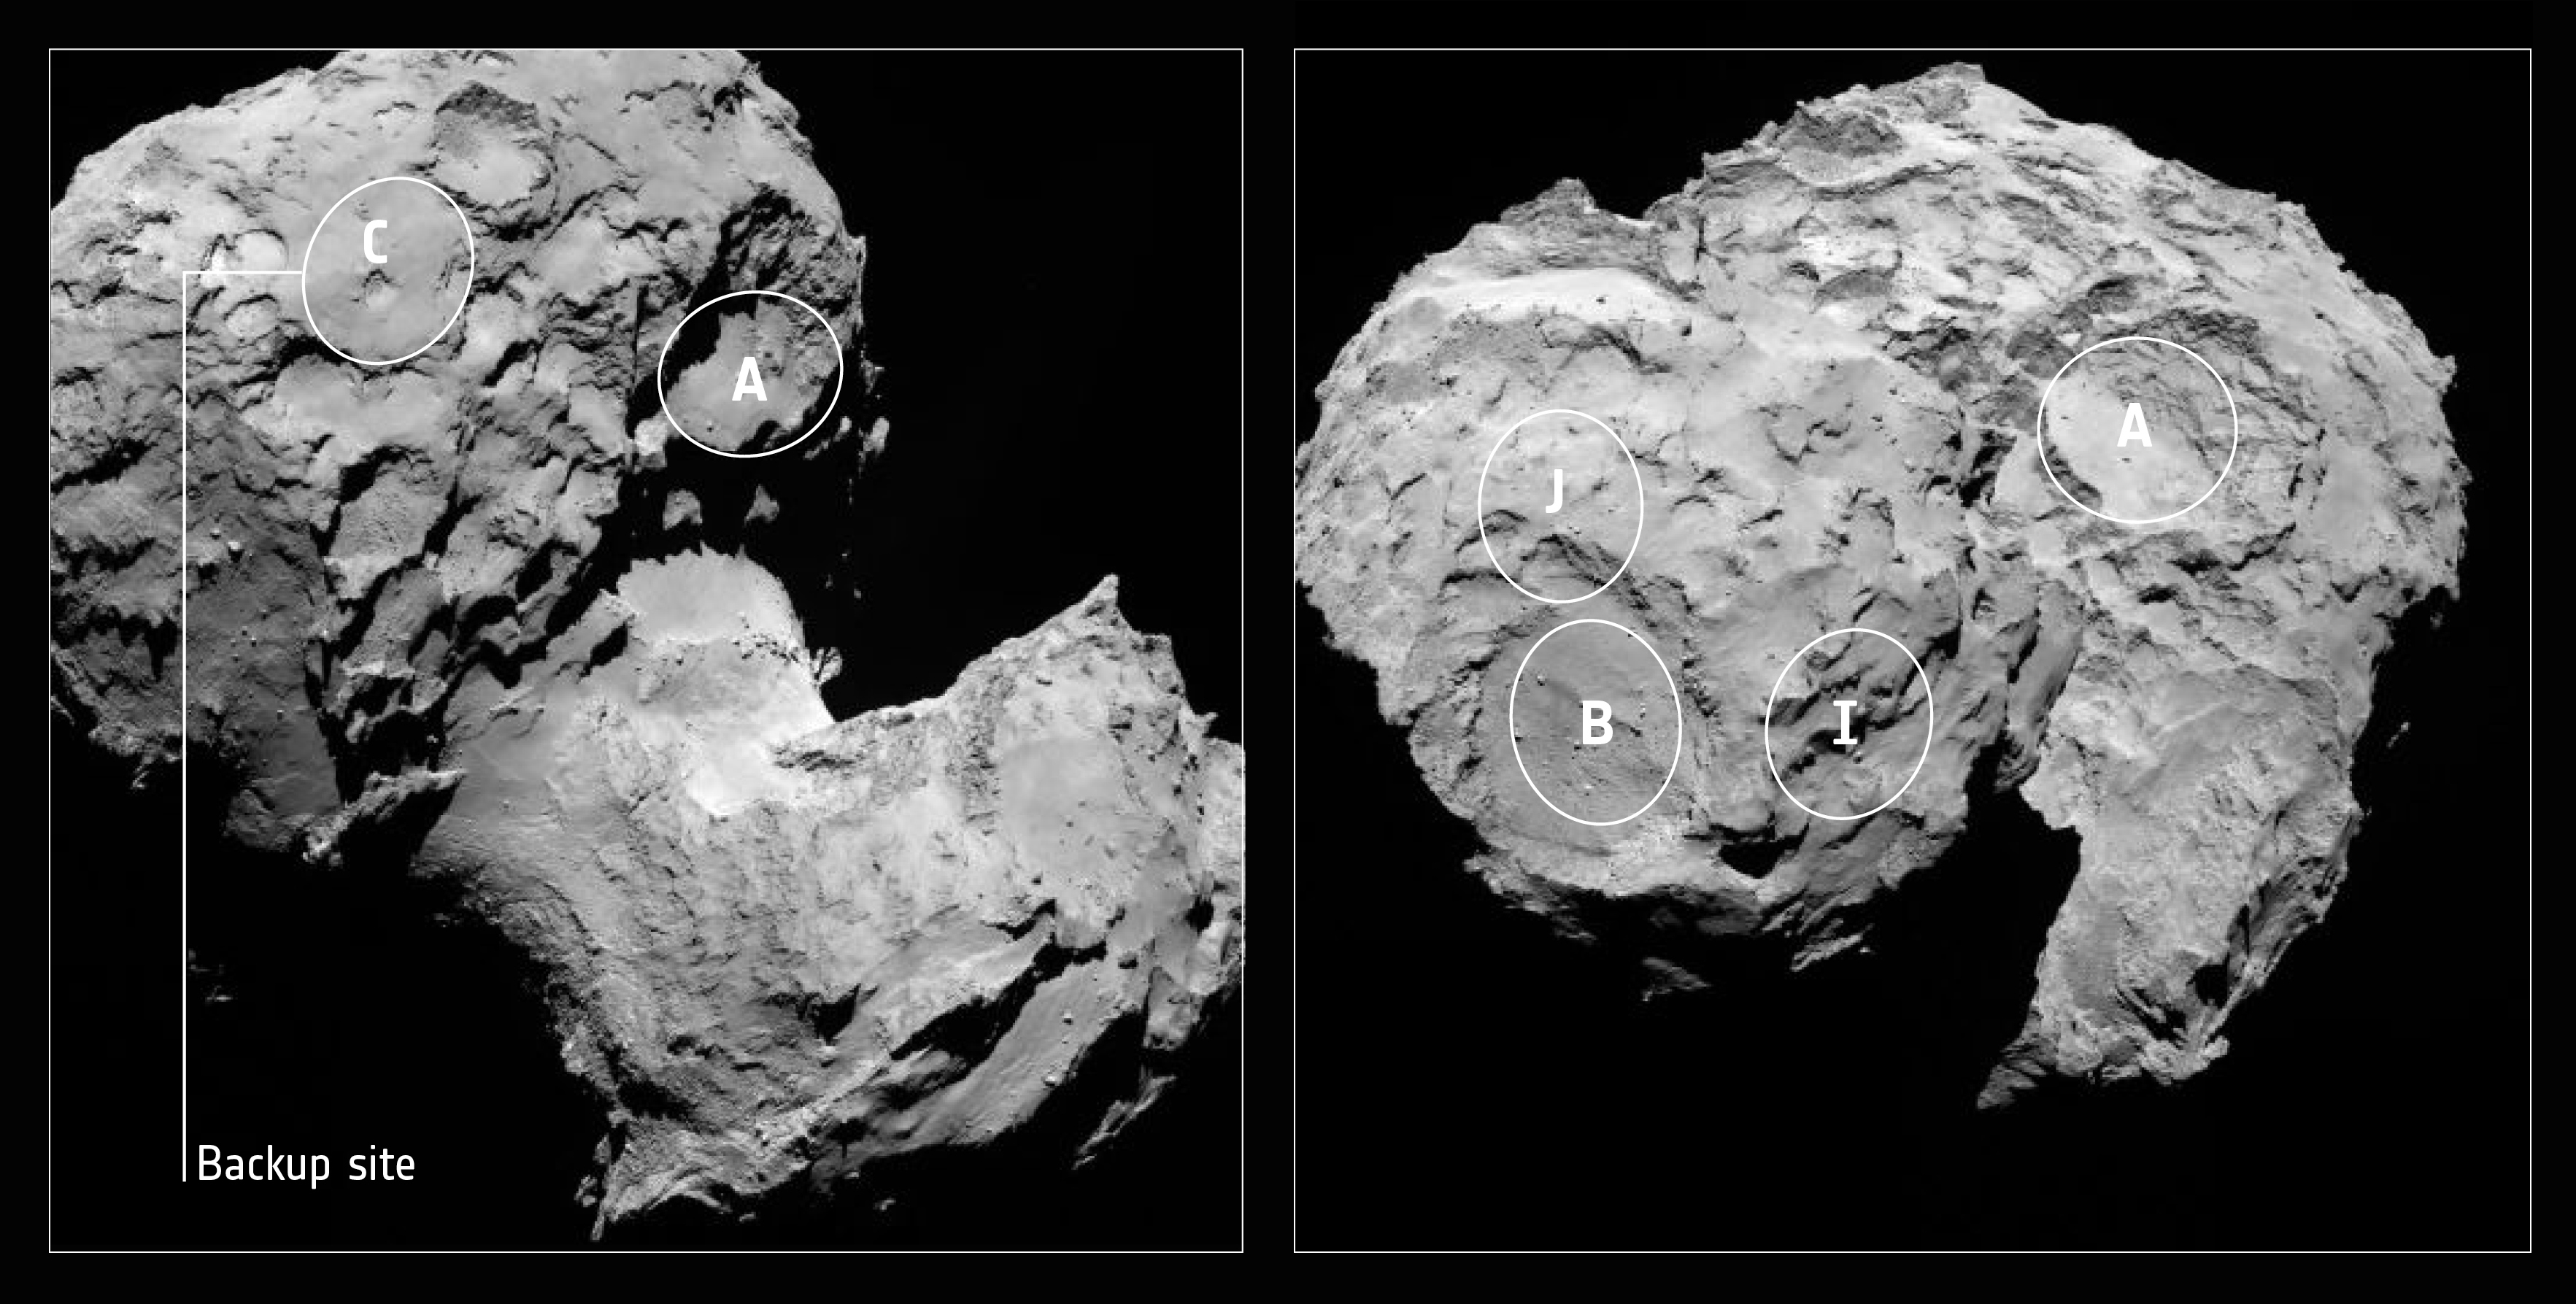 Los cinco candidatos propuestos para el aterrizaje de Philae, el robot de Rosetta. Finalmente, el sitio “J” fue el escogido. Fuente: ESA.